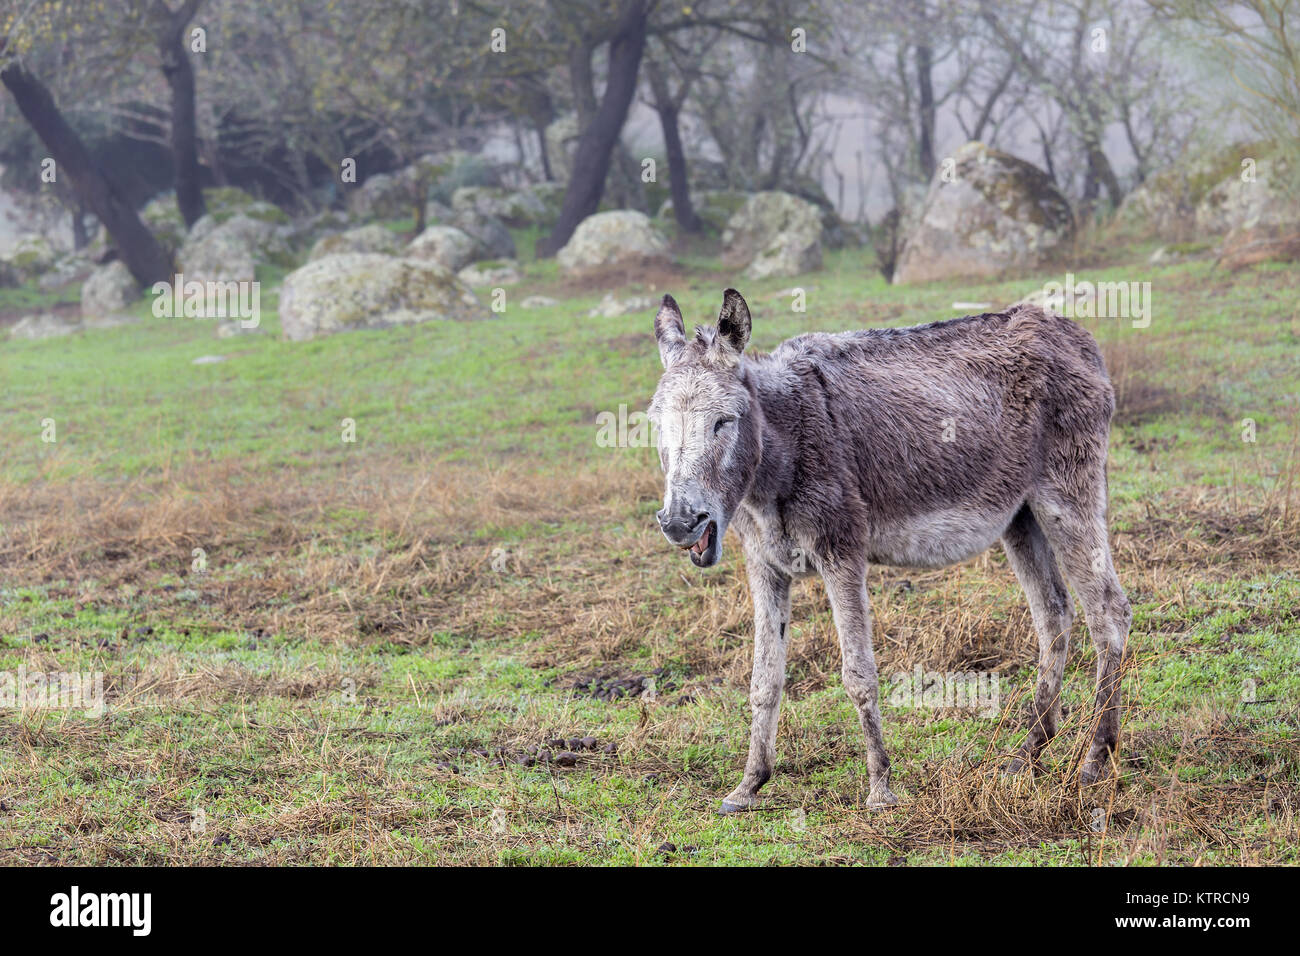 Braying donkey. Stock Photo